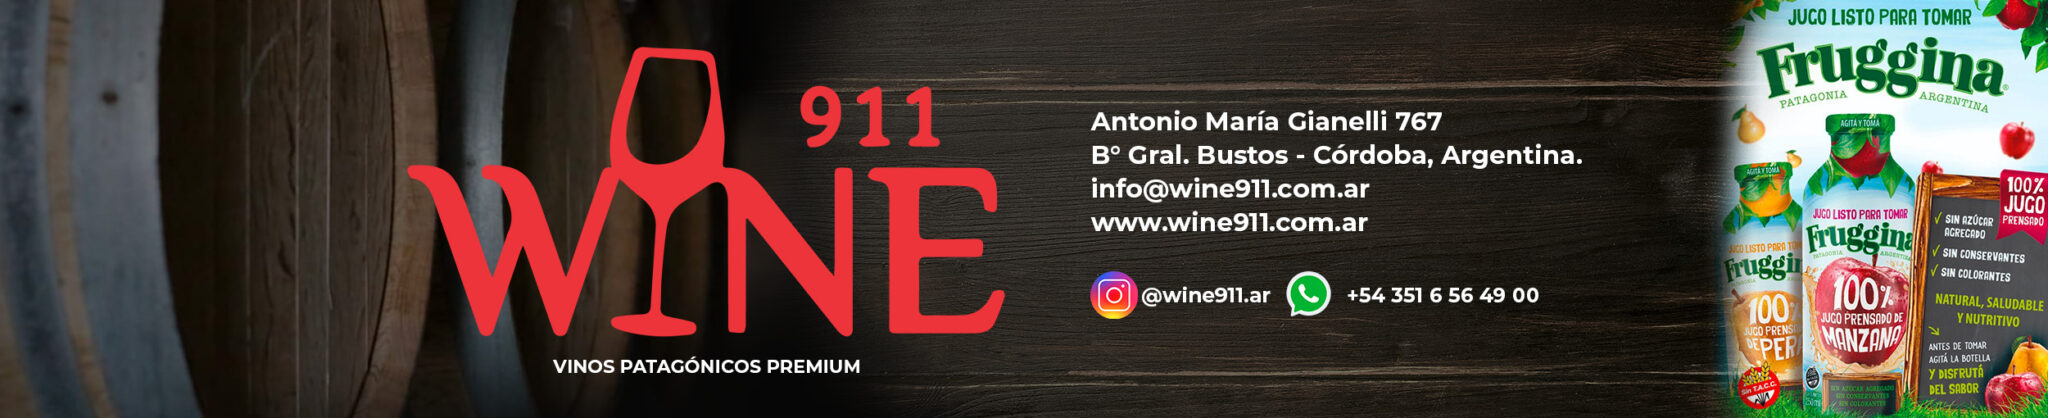 Wine 911